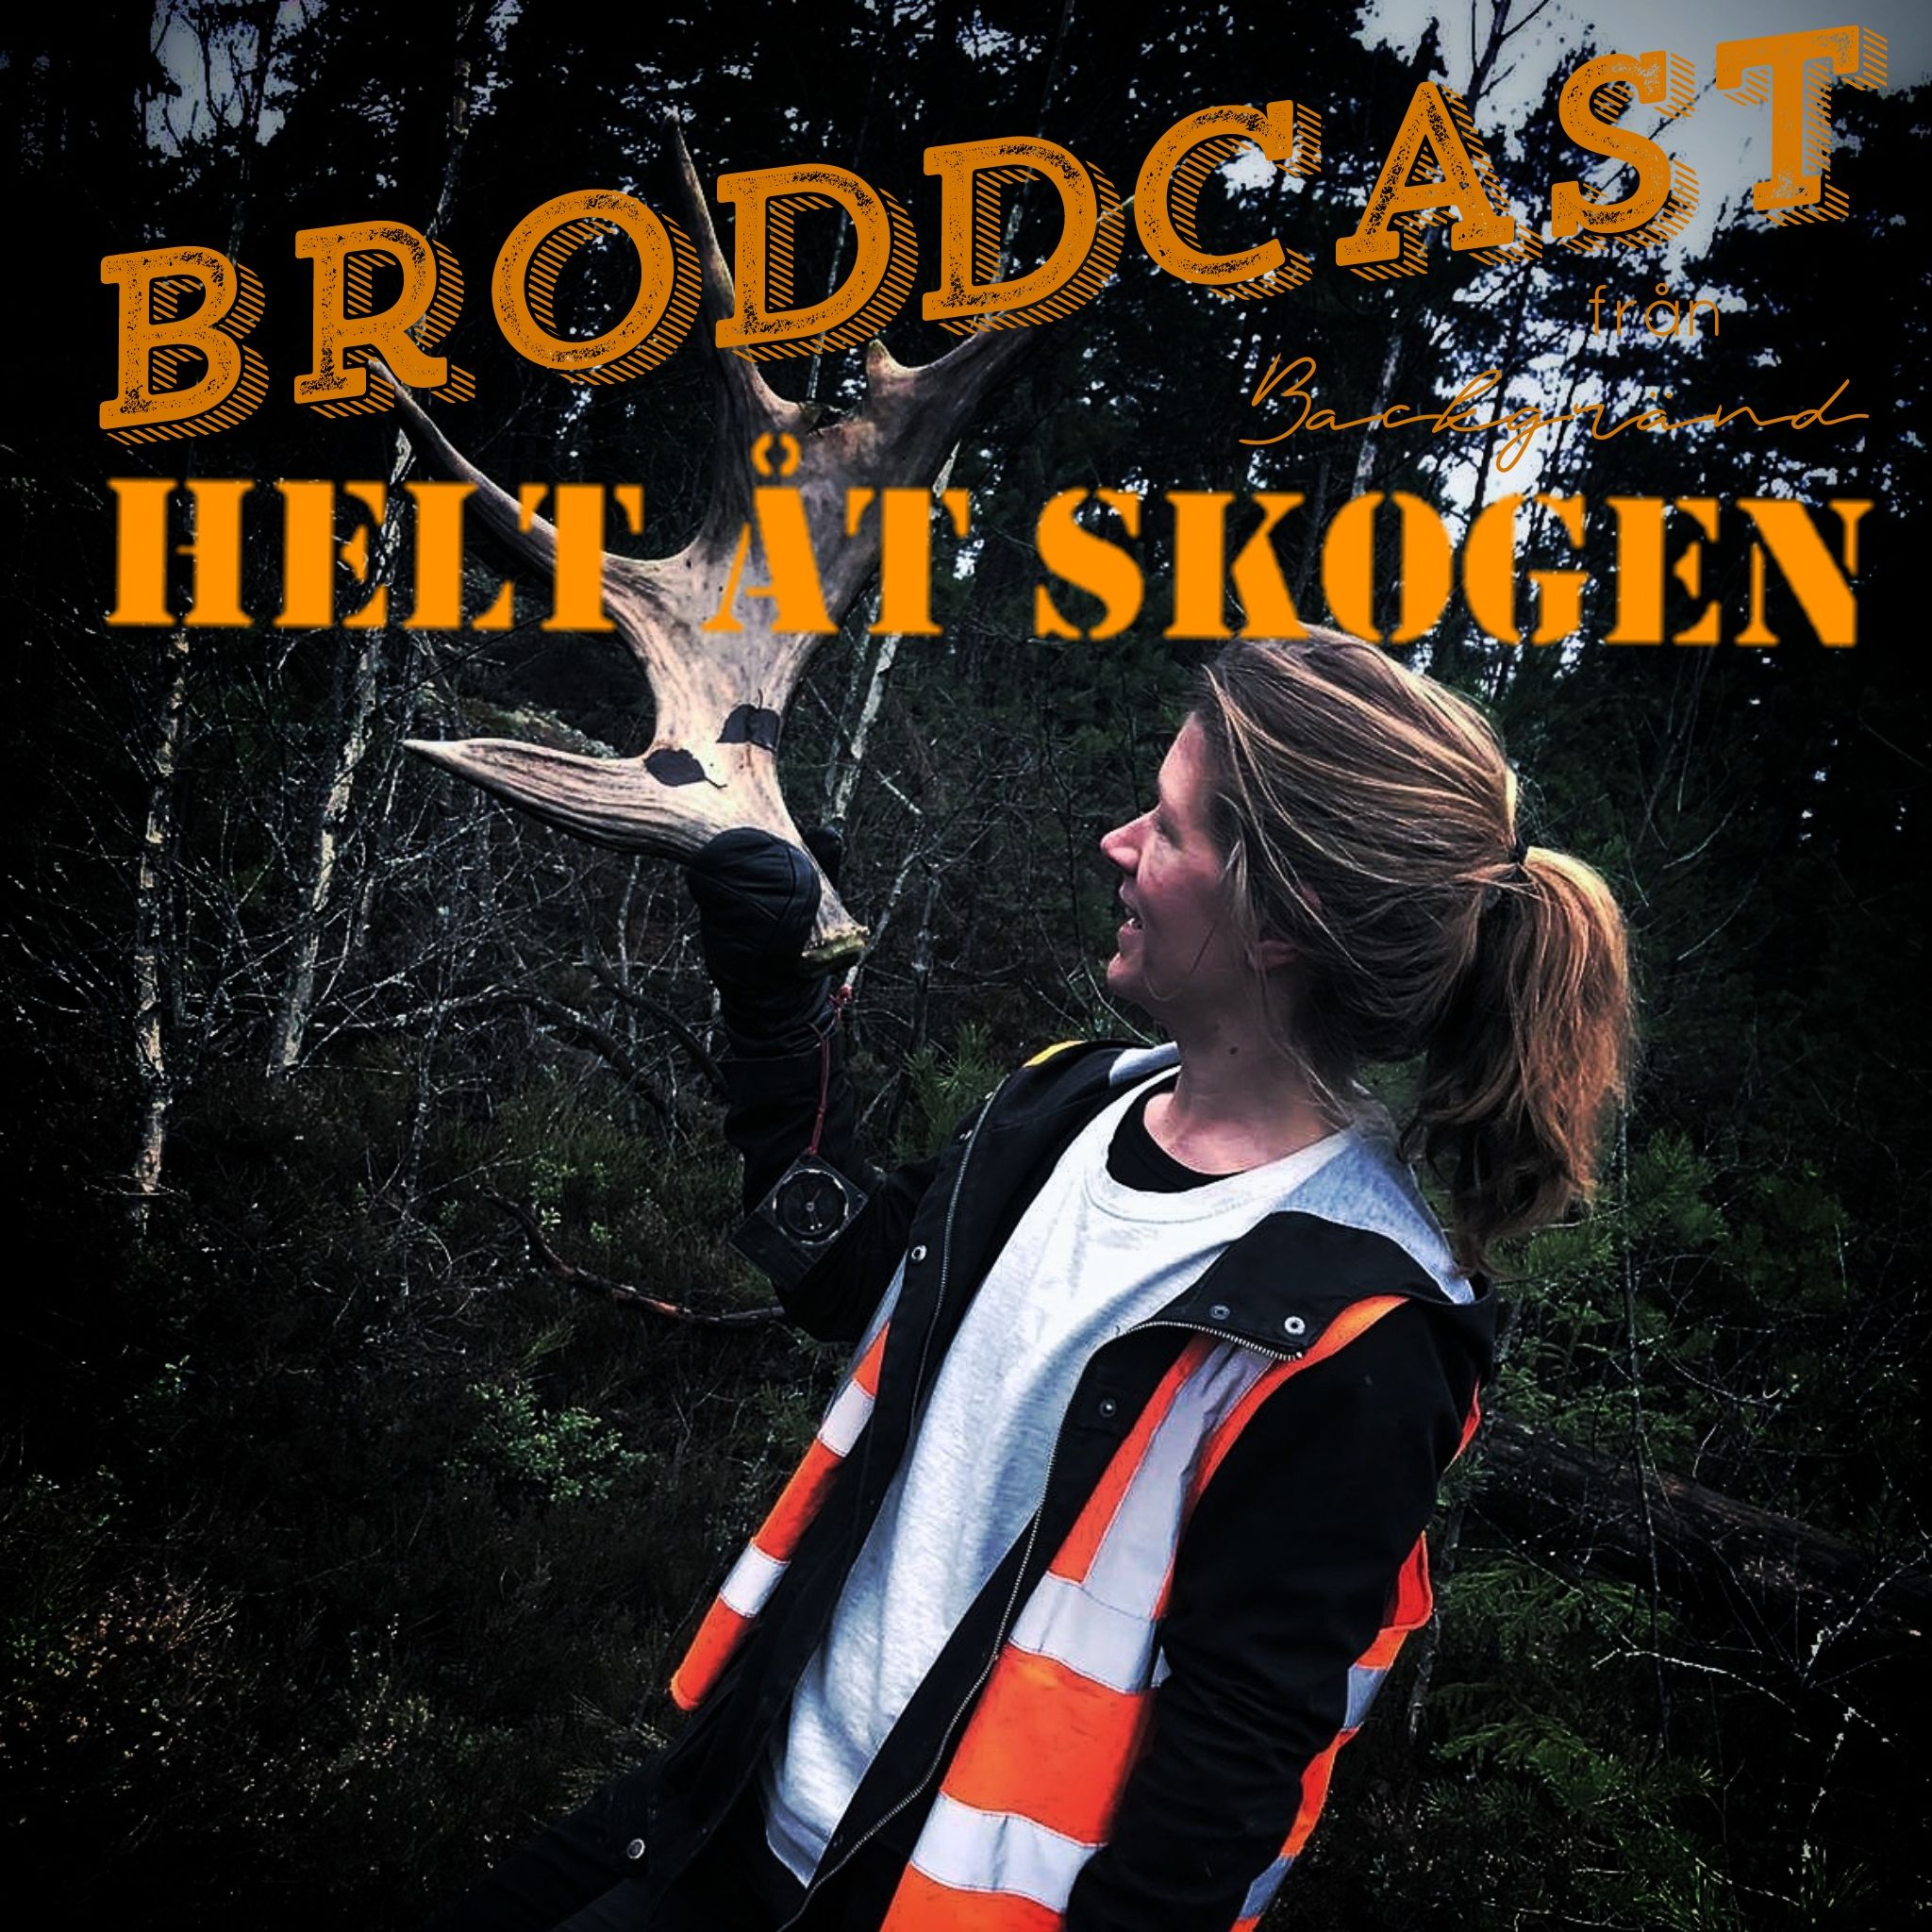 Broddcast från Backgränd HELT ÅT SKOGEN: Älgpremiär